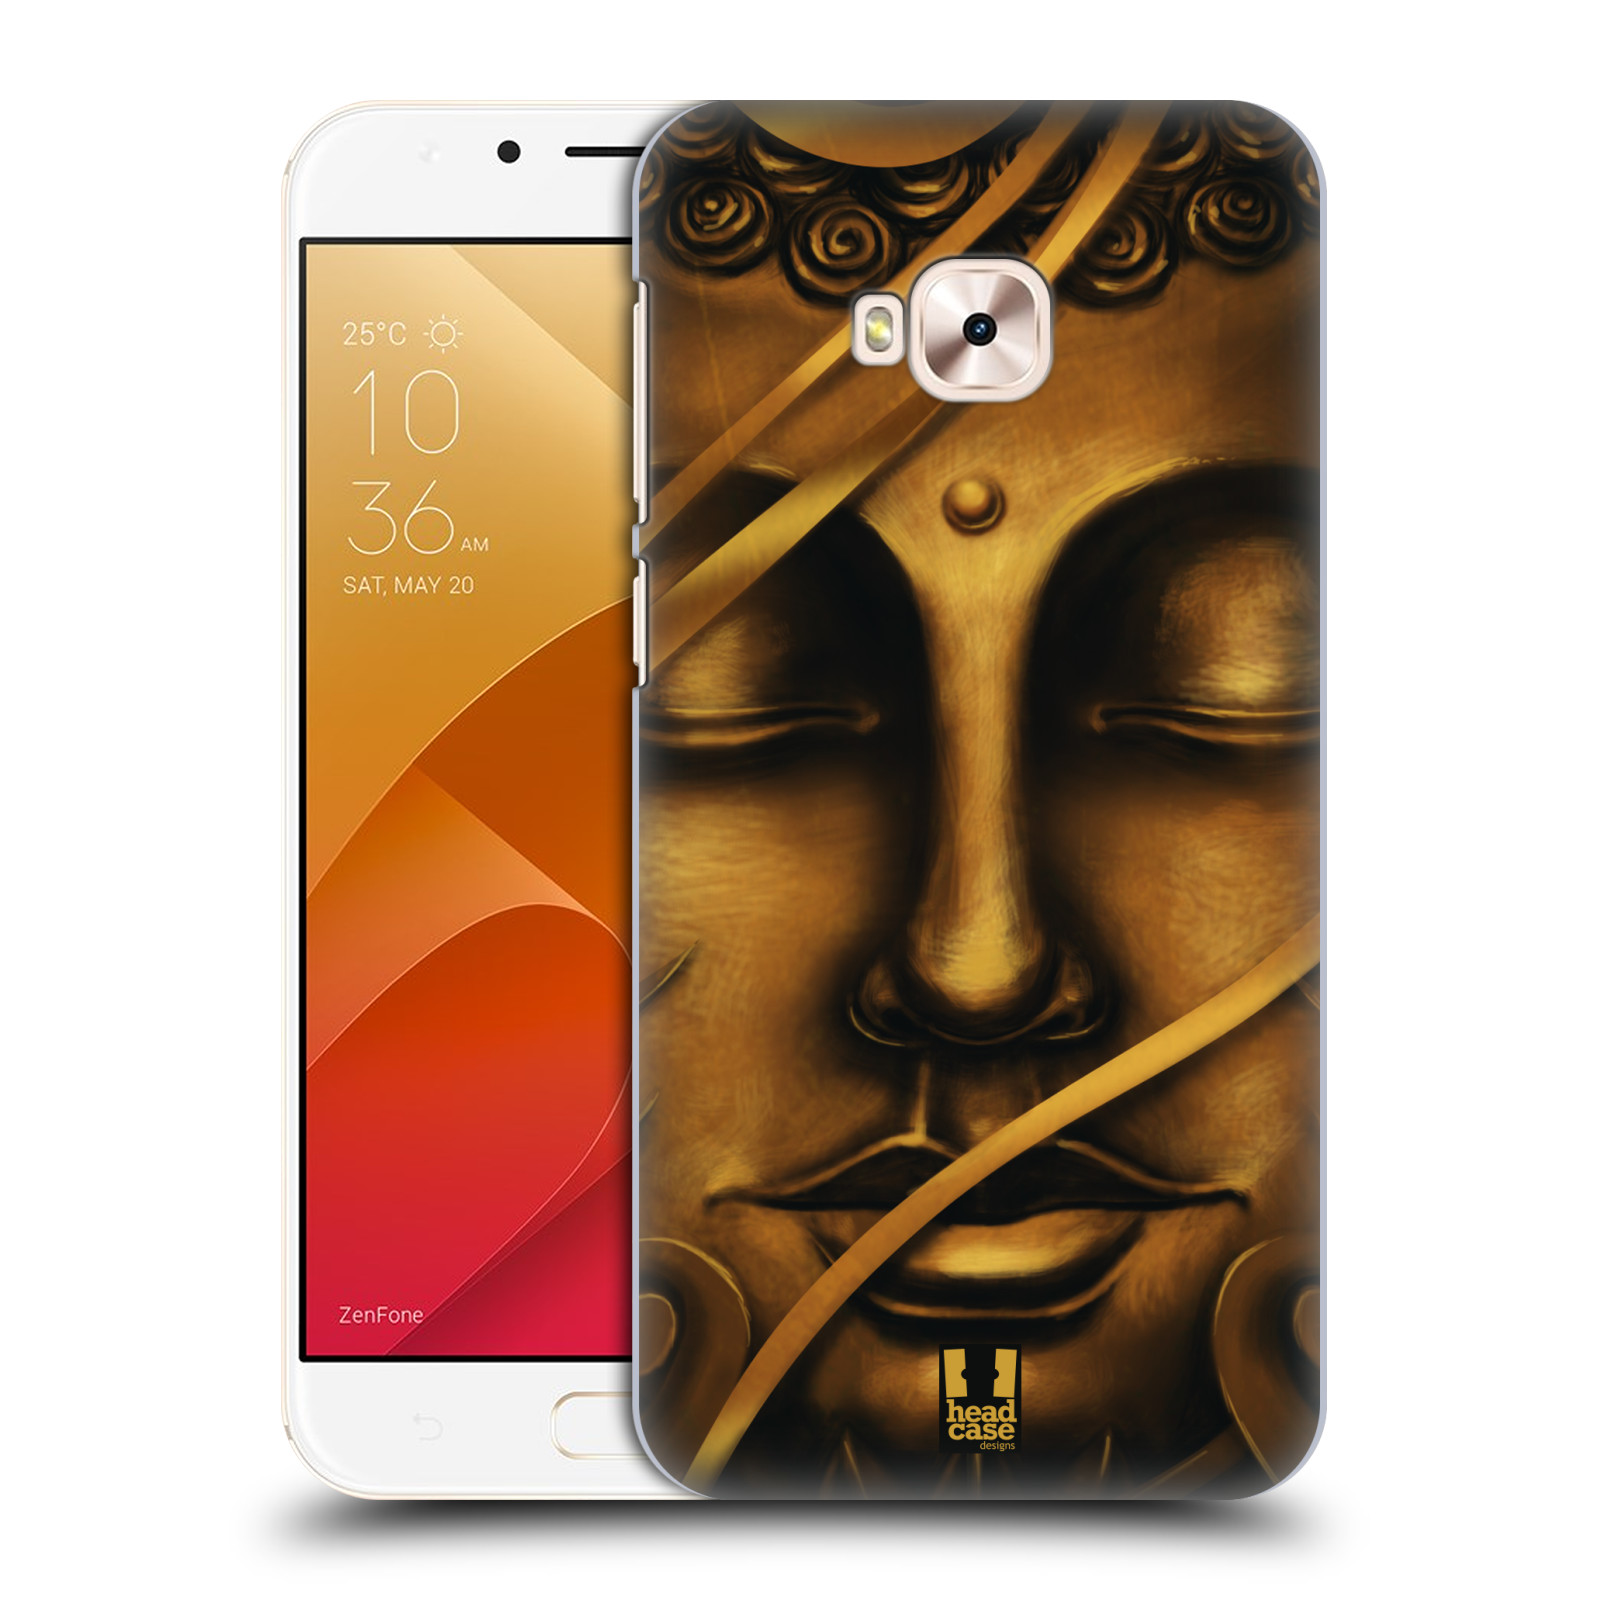 HEAD CASE plastový obal na mobil Asus Zenfone 4 Selfie Pro ZD552KL vzor BUDDHA ZLATÝ BUDHA